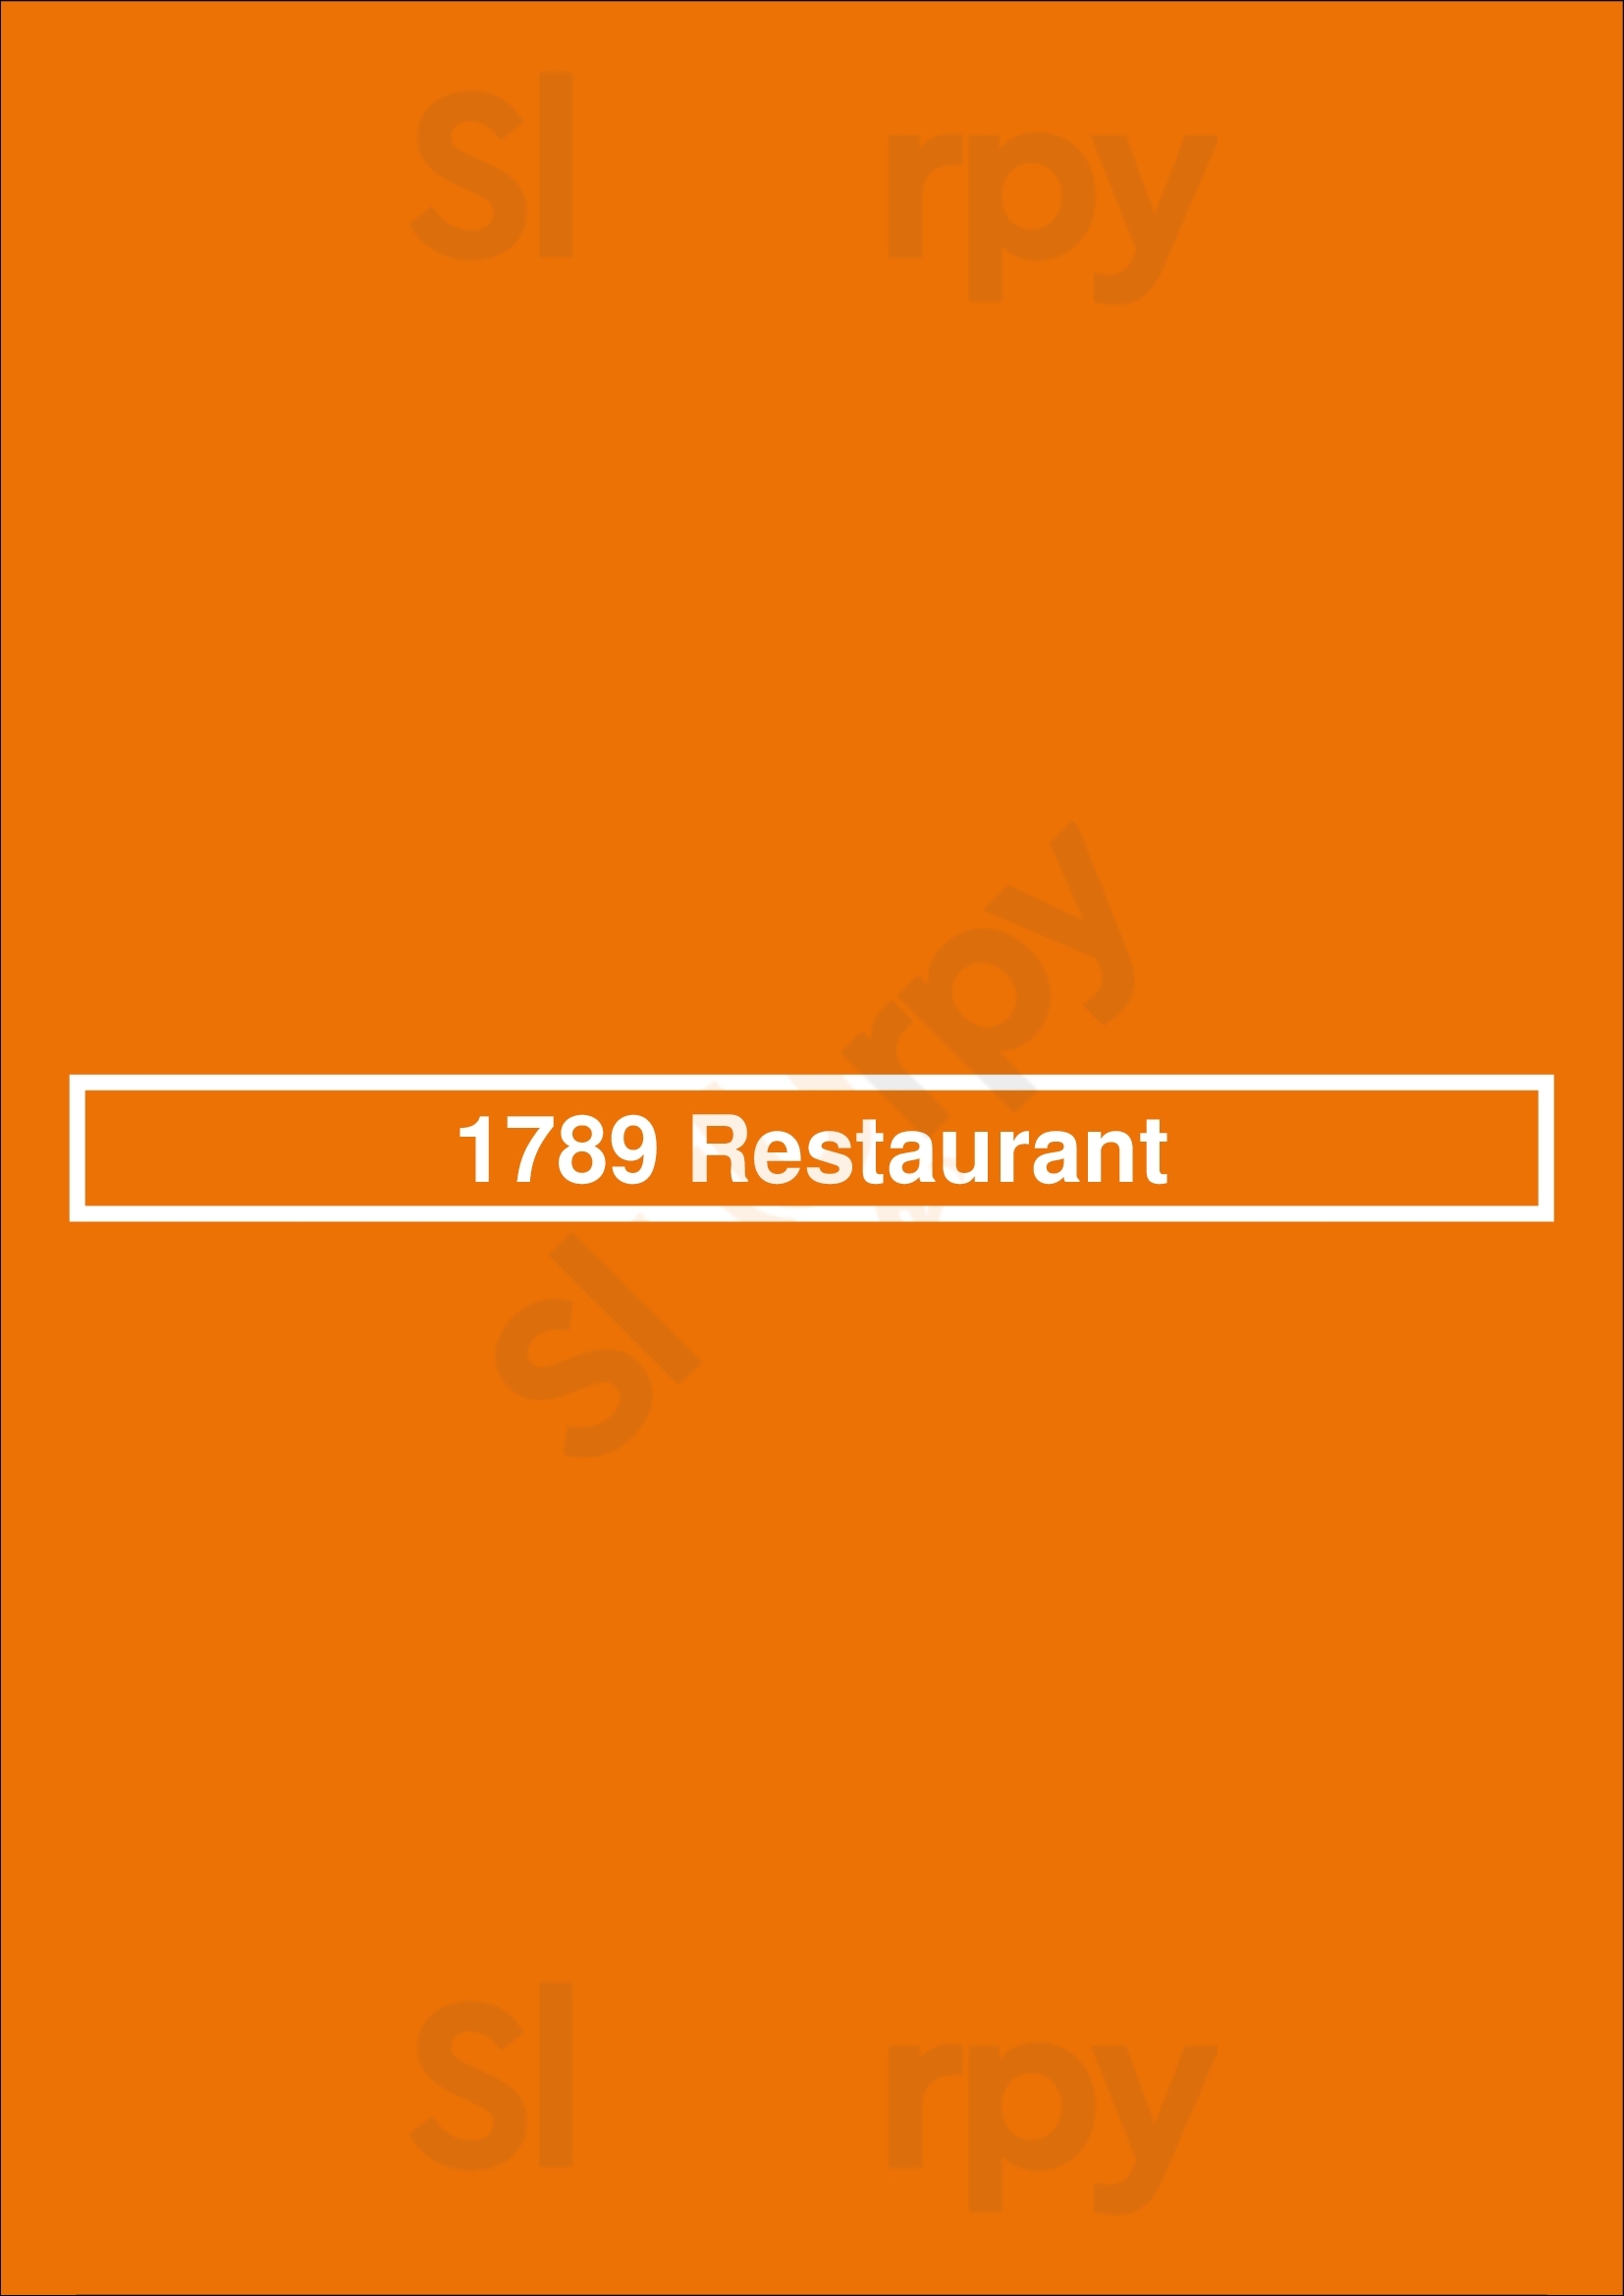 1789 Restaurant & Bar Washington DC Menu - 1